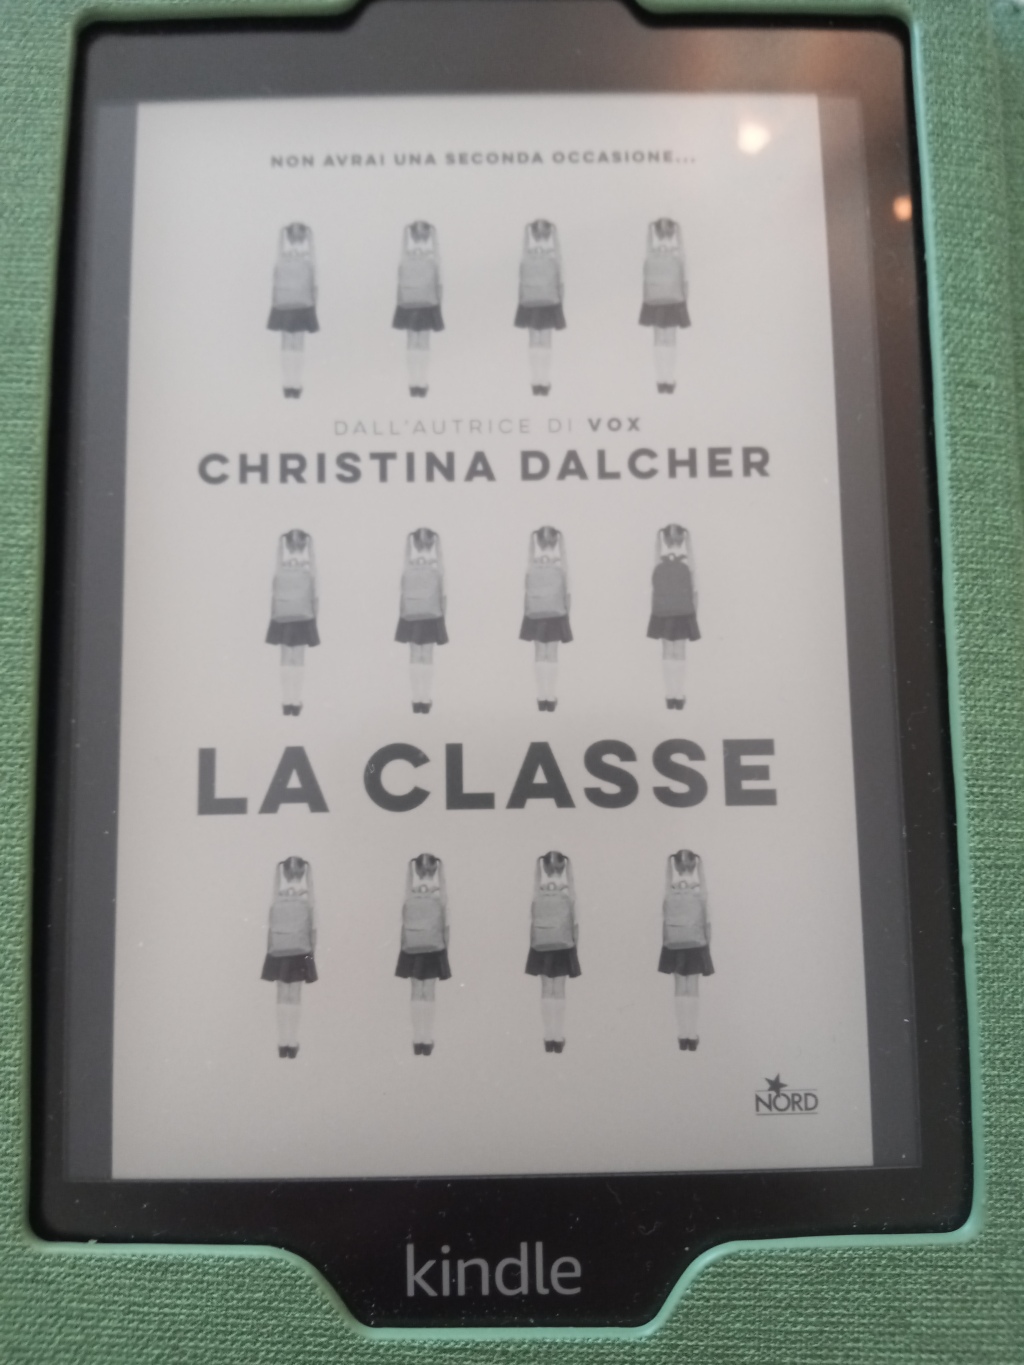 Orecchio 16. “La classe” – C. Dalcher